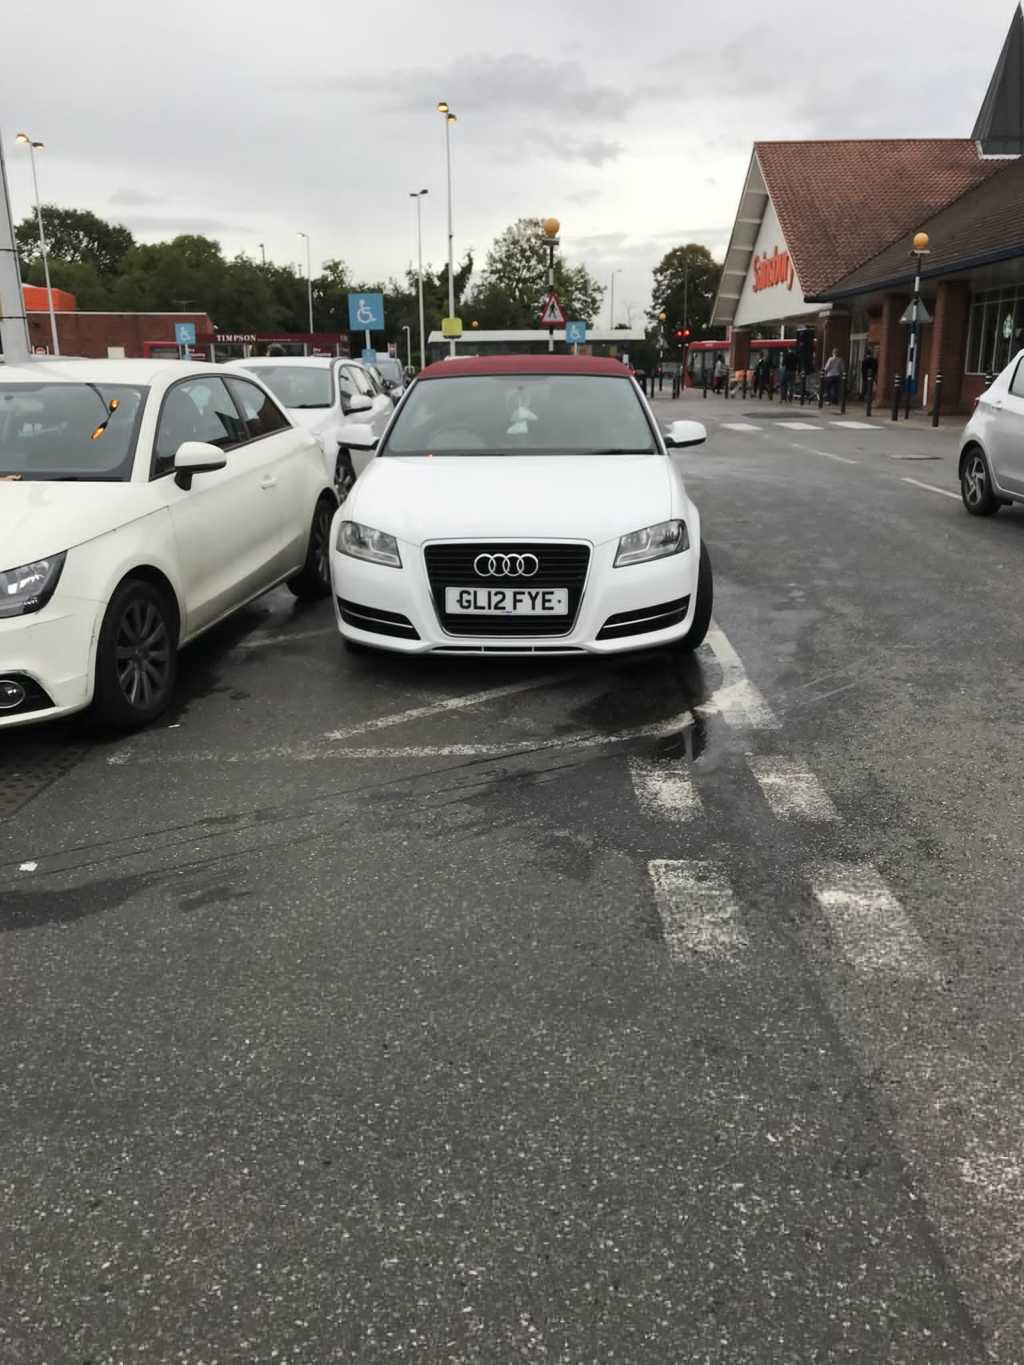 GL12 FYE displaying Selfish Parking